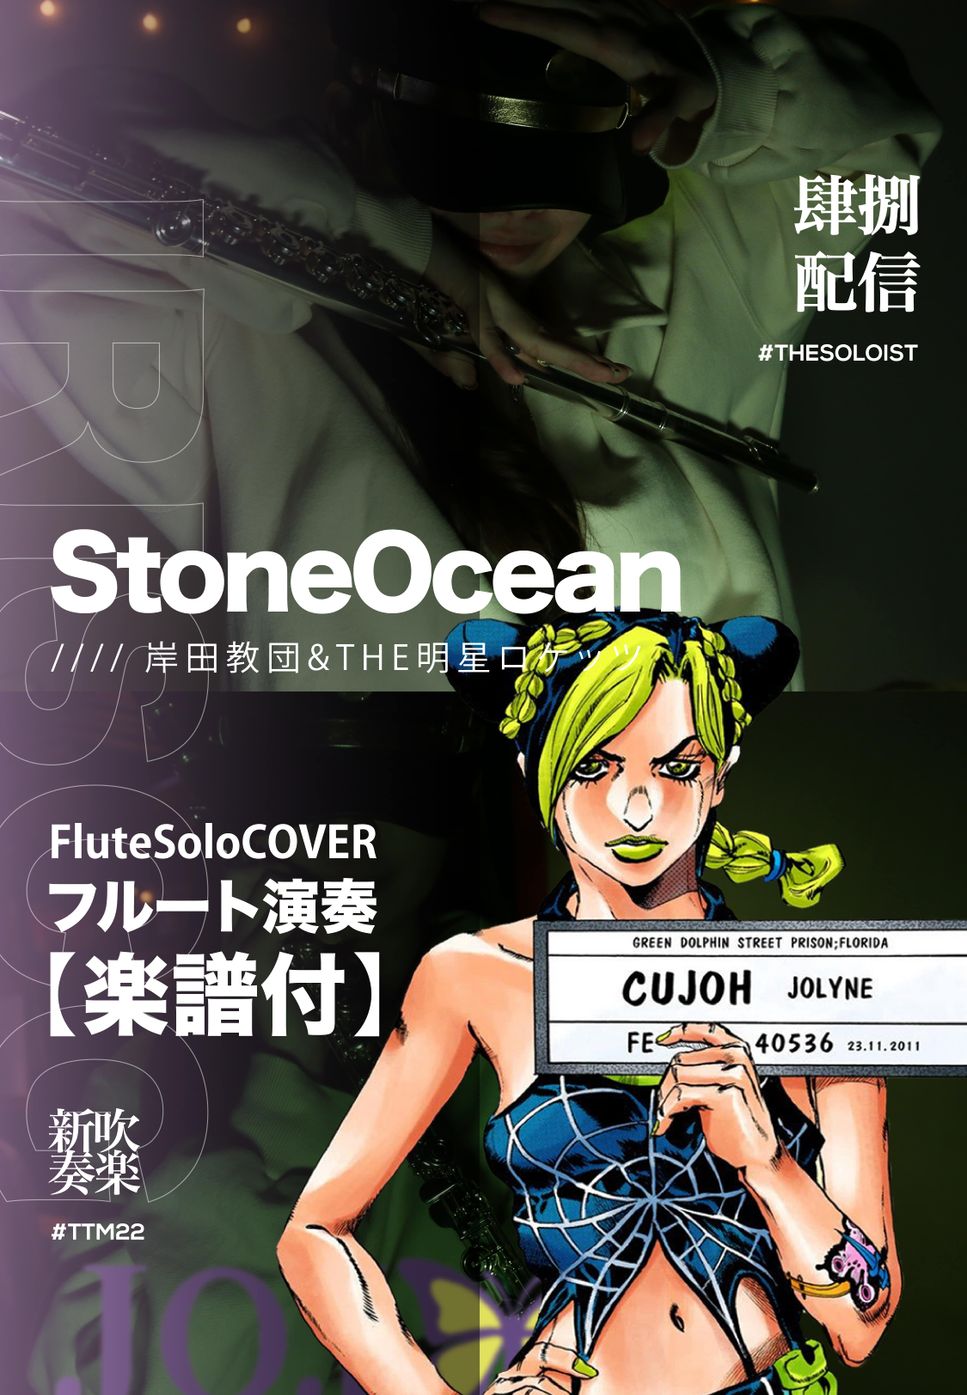 JoJo's Bizarre Adventure Part6 StoneOcean - StoneOcean (FluteSolo) by FungYip